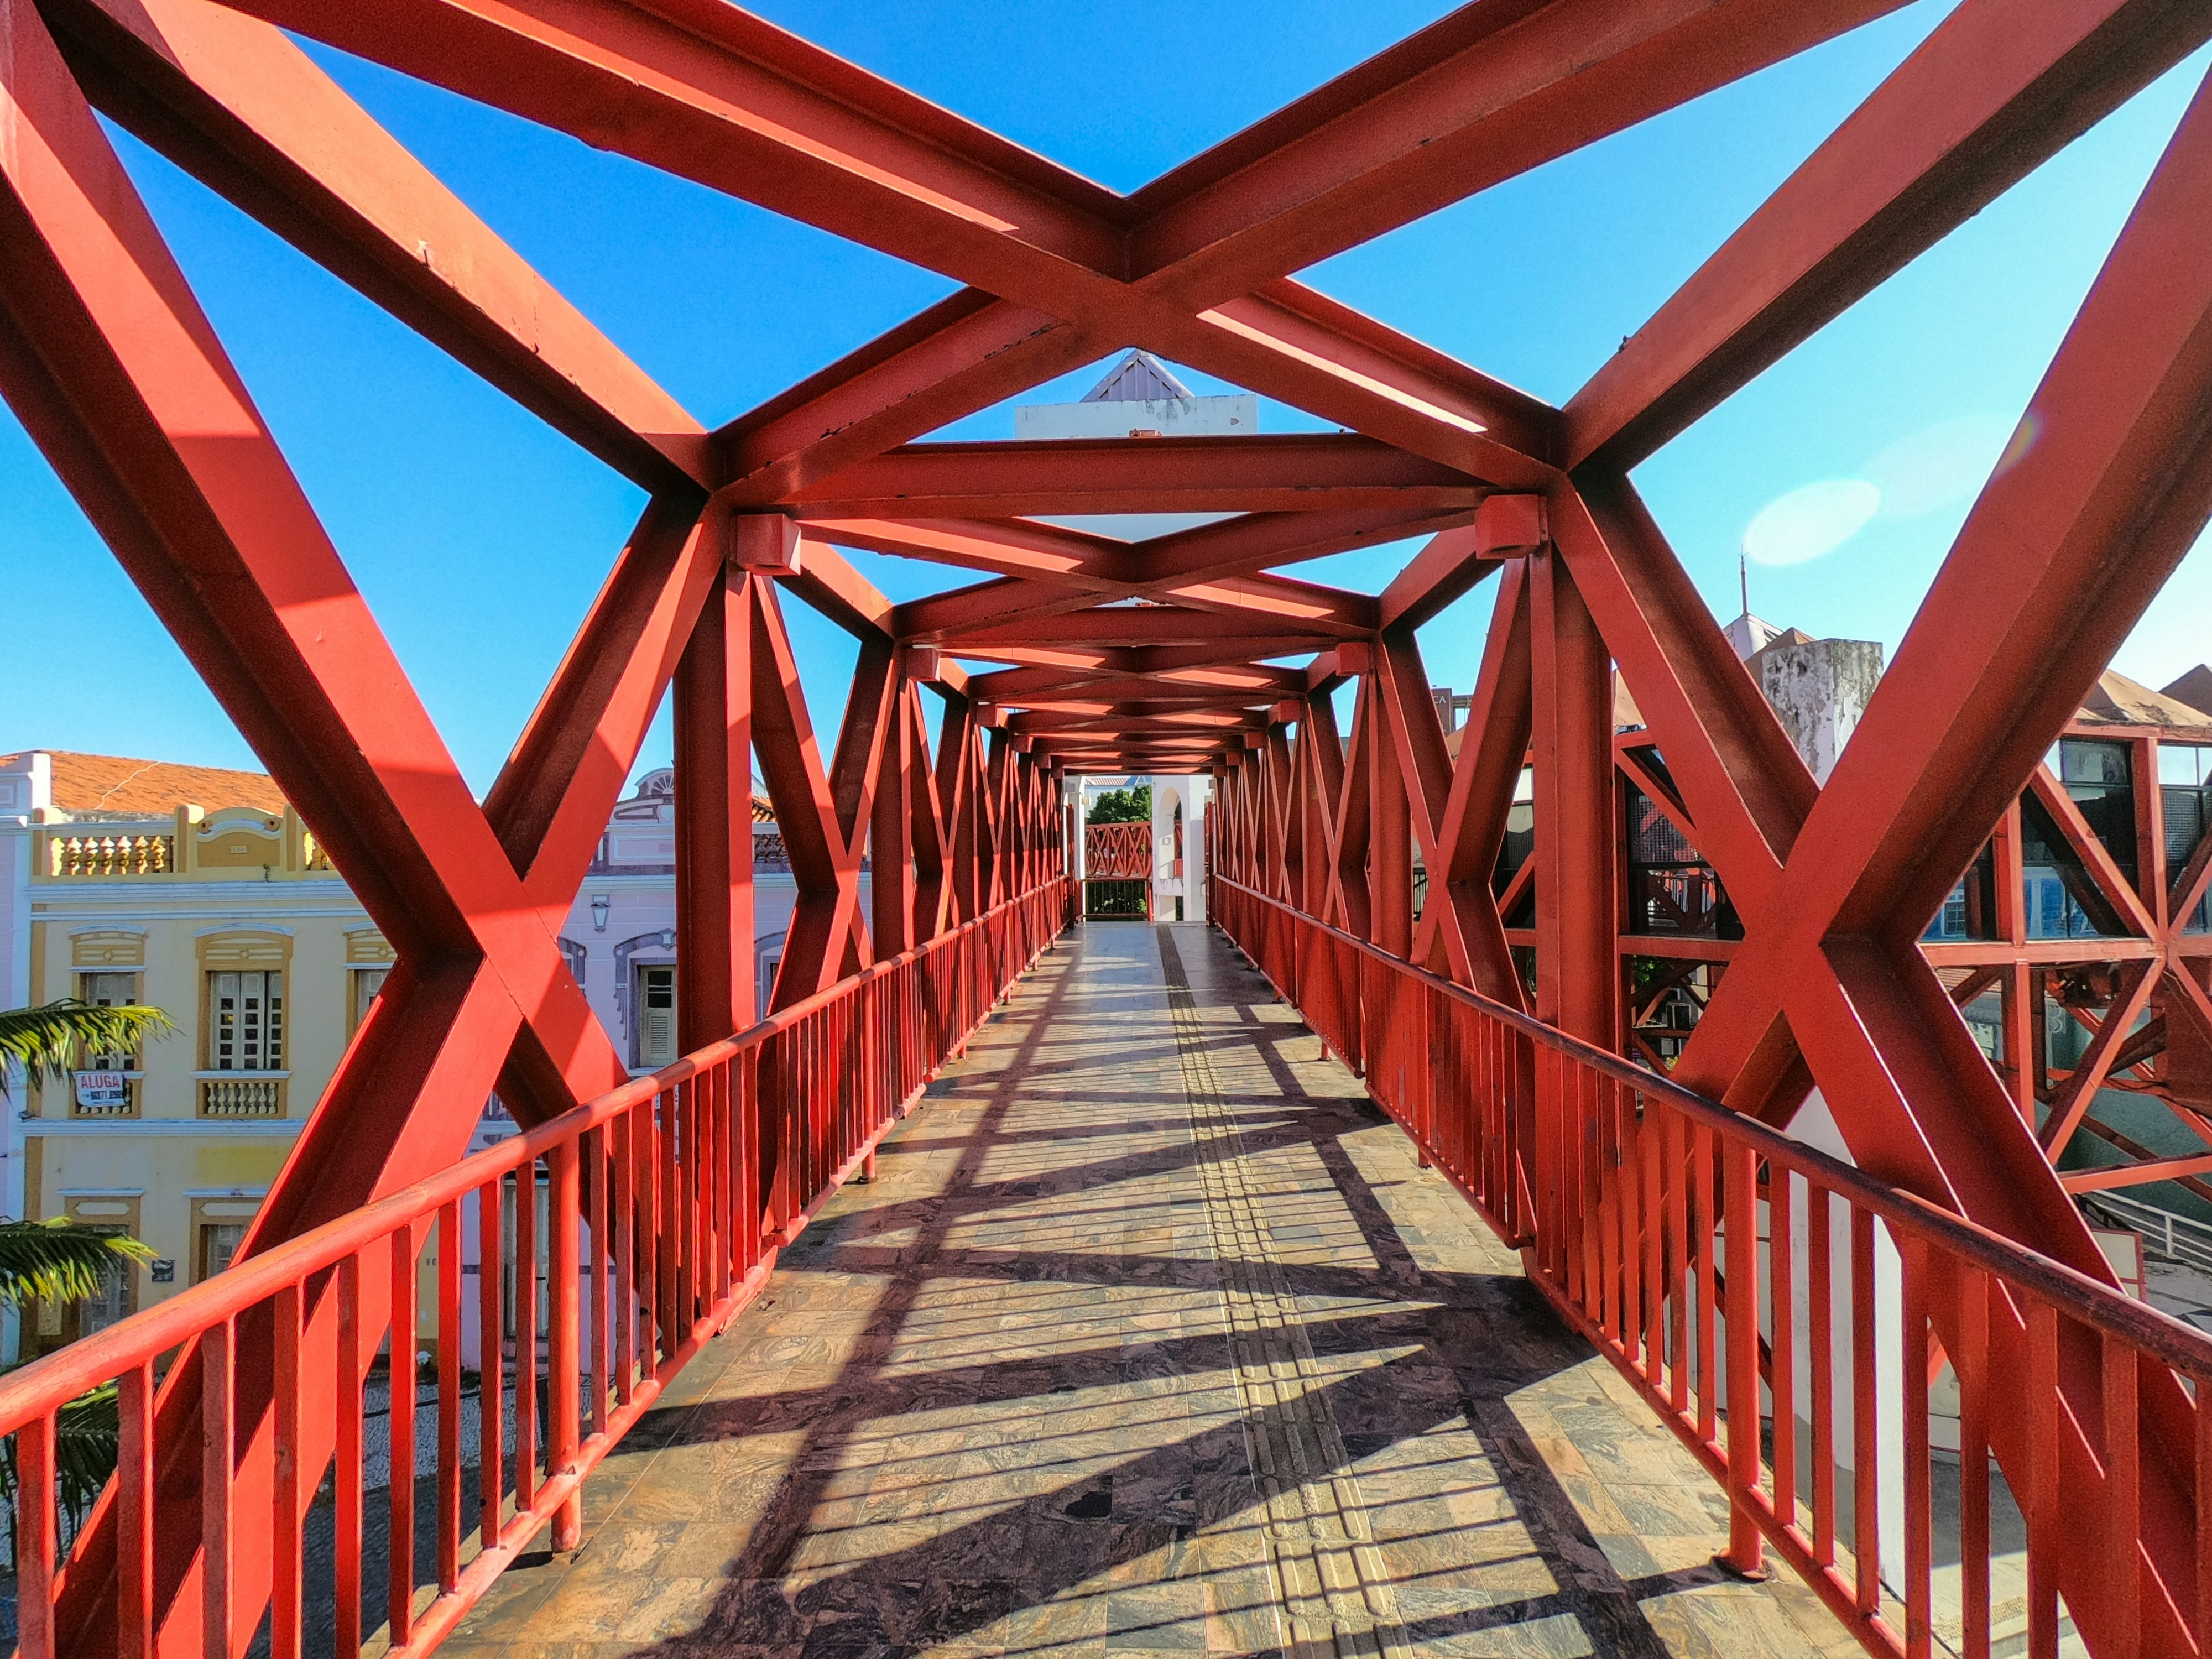 brown wooden bridge under blue sky during daytime